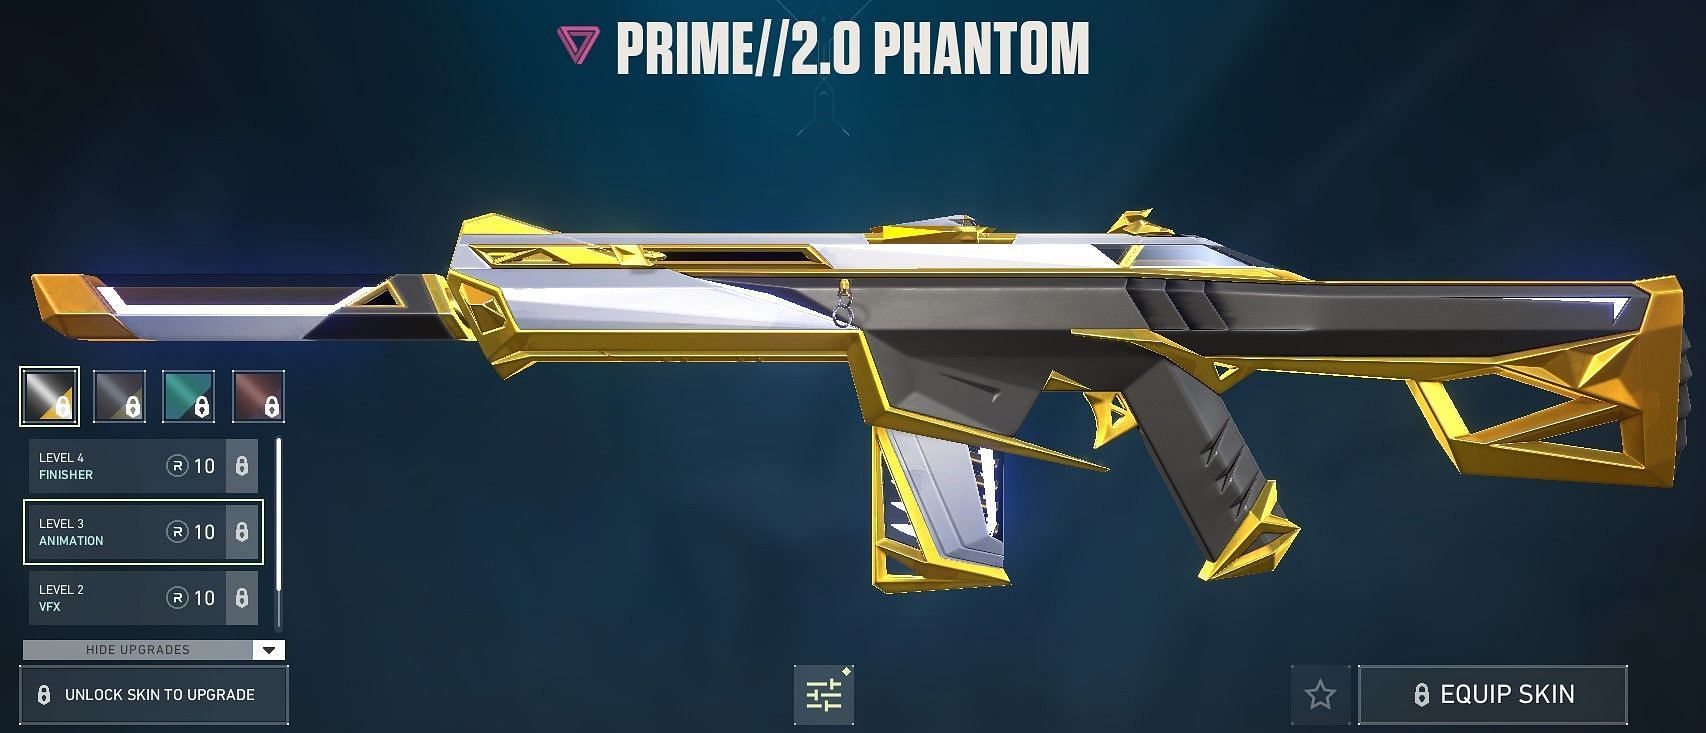 Prime//2.0 Phantom (Image via Riot Games)